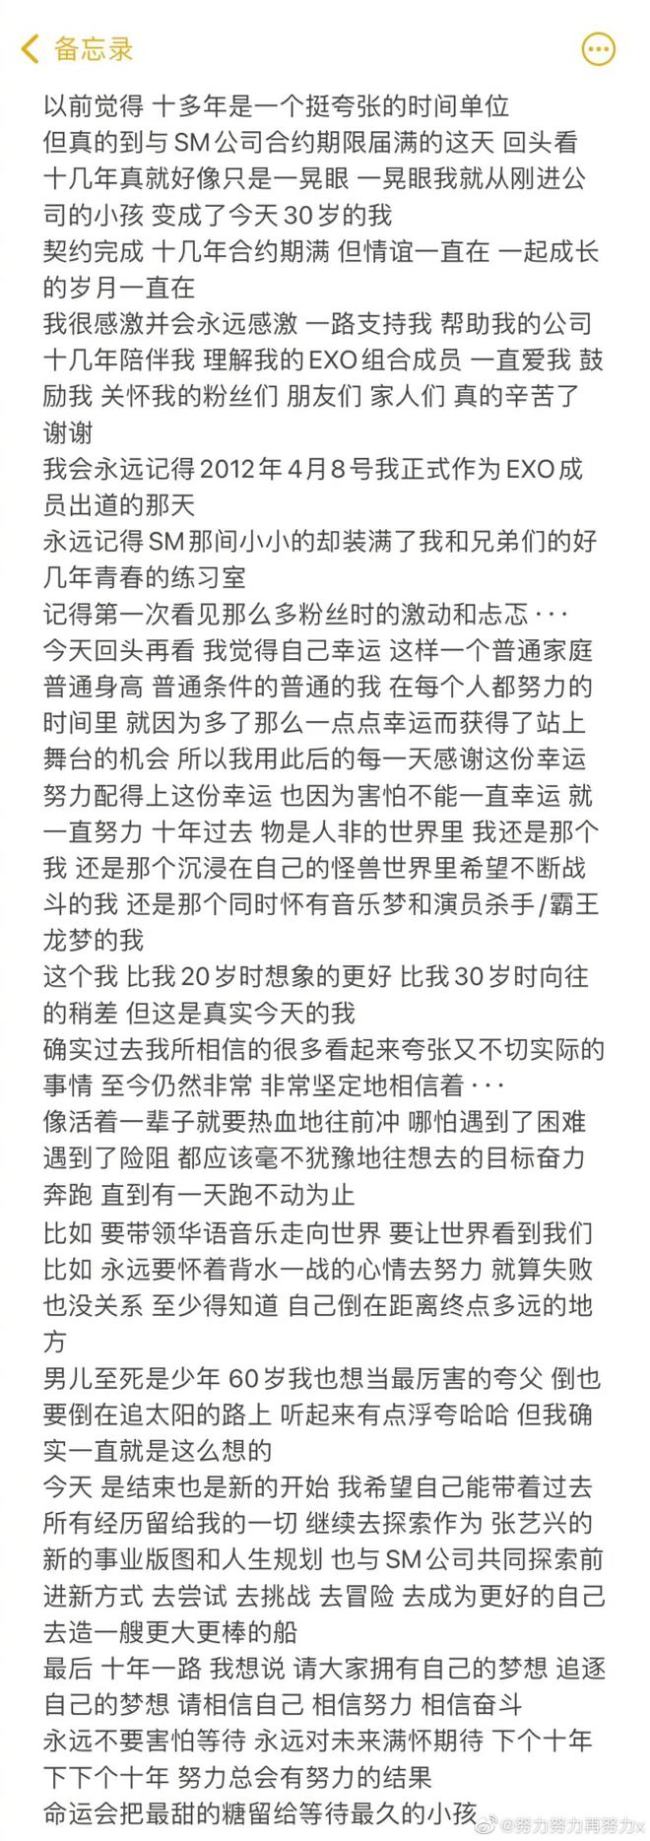 张艺兴宣布与SM合约到期 发长文回应过往经历